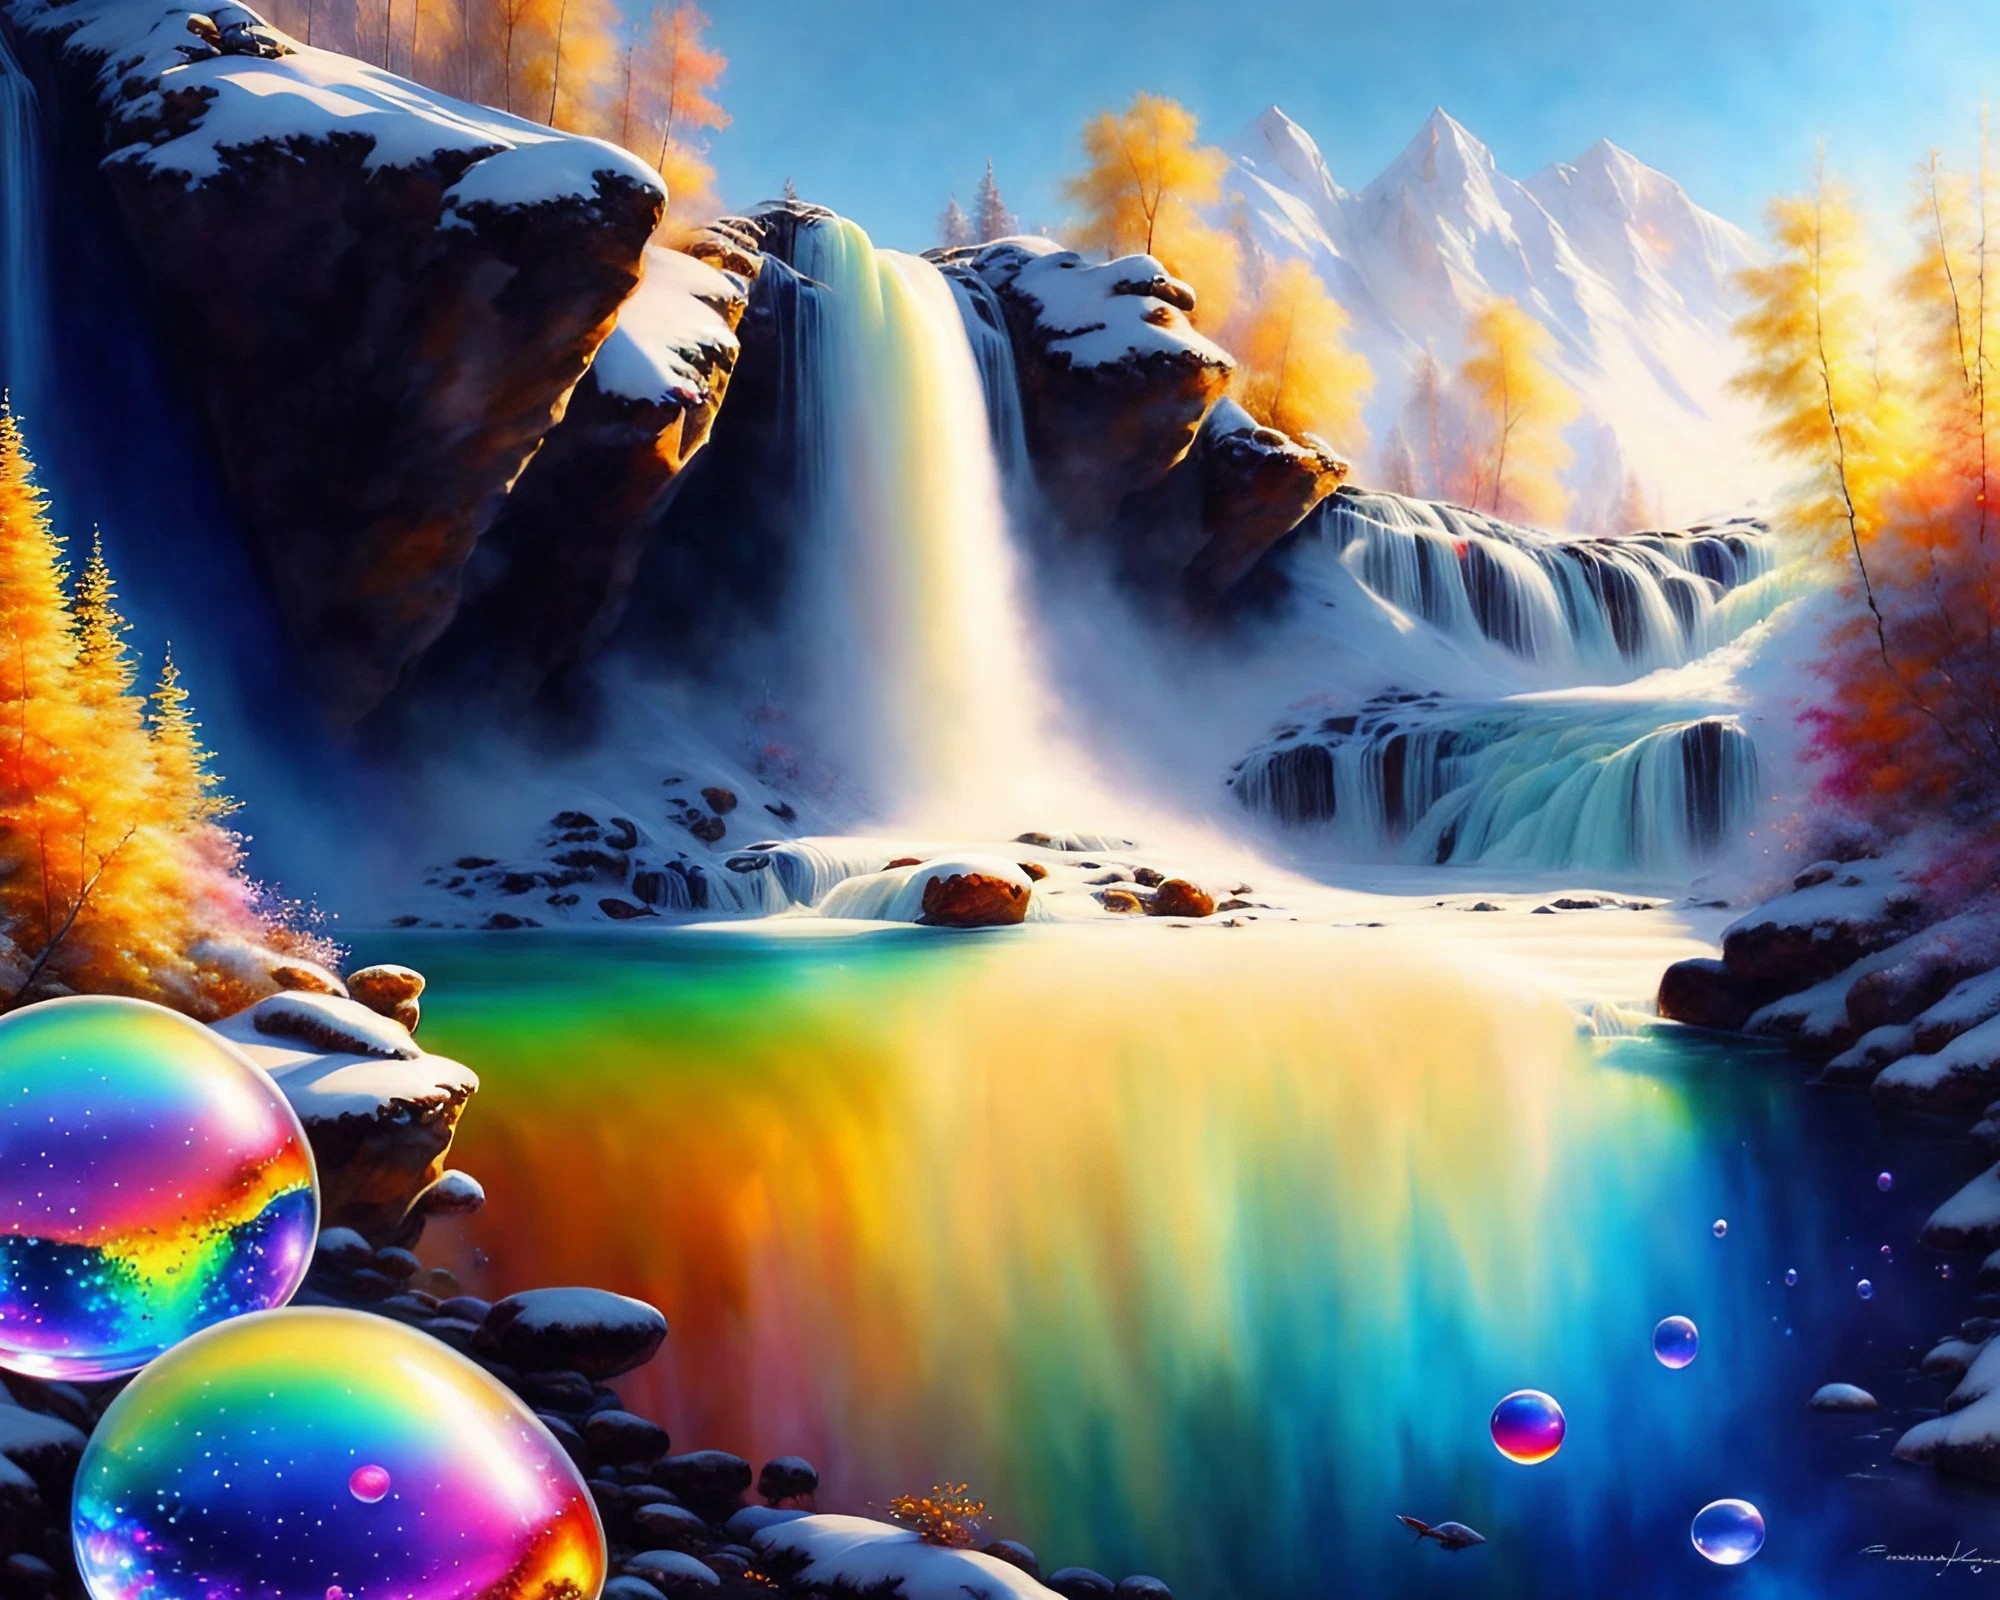 大自然の山と虹と滝とカラフルシャボン玉と癒しのリアル風景絵画